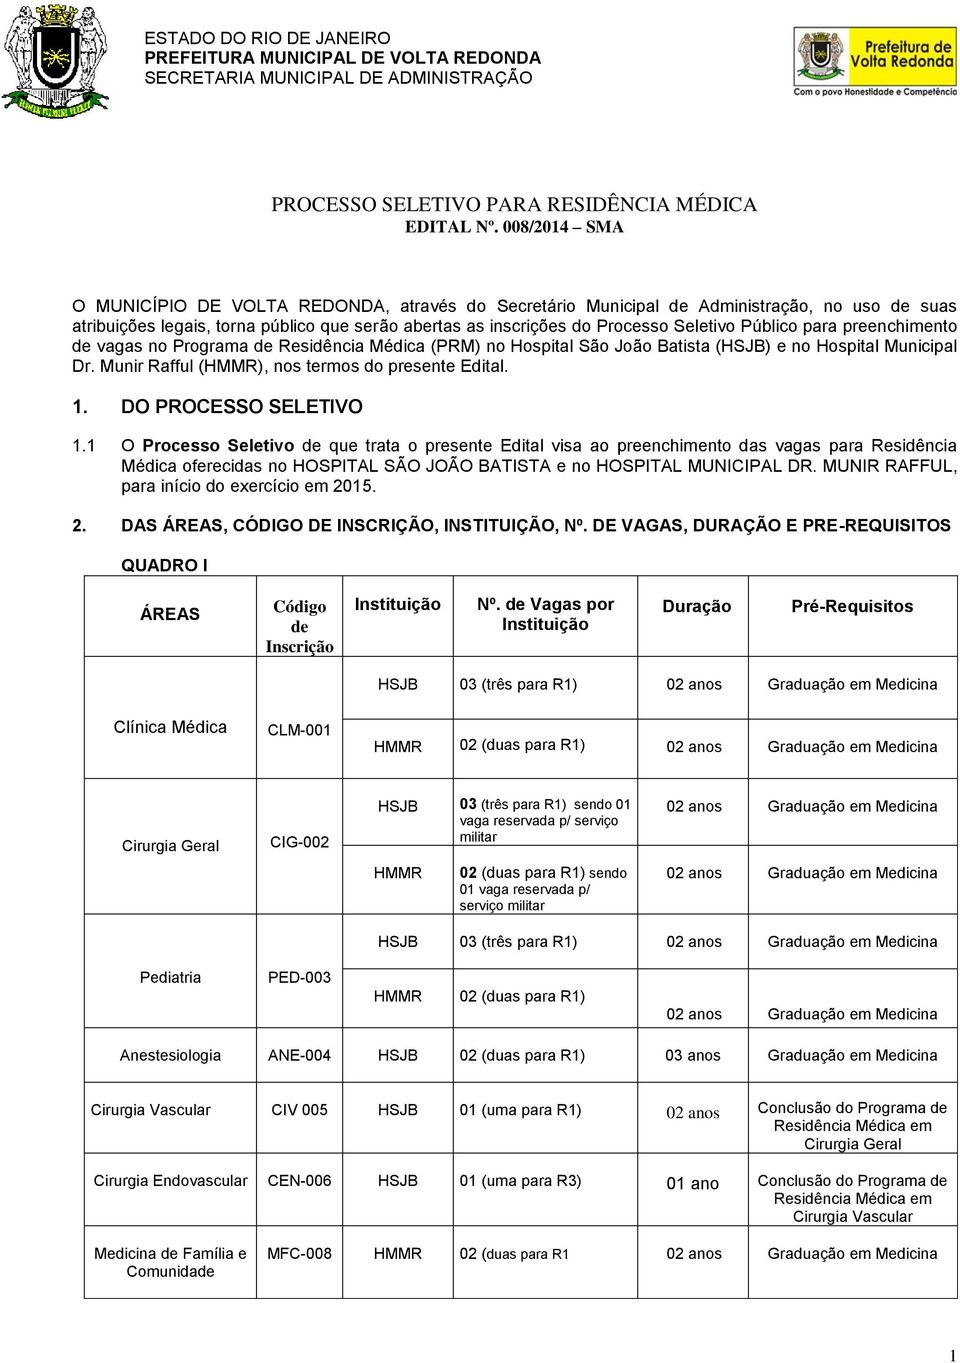 Público para preenchimento de vagas no Programa de Residência Médica (PRM) no Hospital São João Batista (HSJB) e no Hospital Municipal Dr. Munir Rafful (HMMR), nos termos do presente Edital. 1.